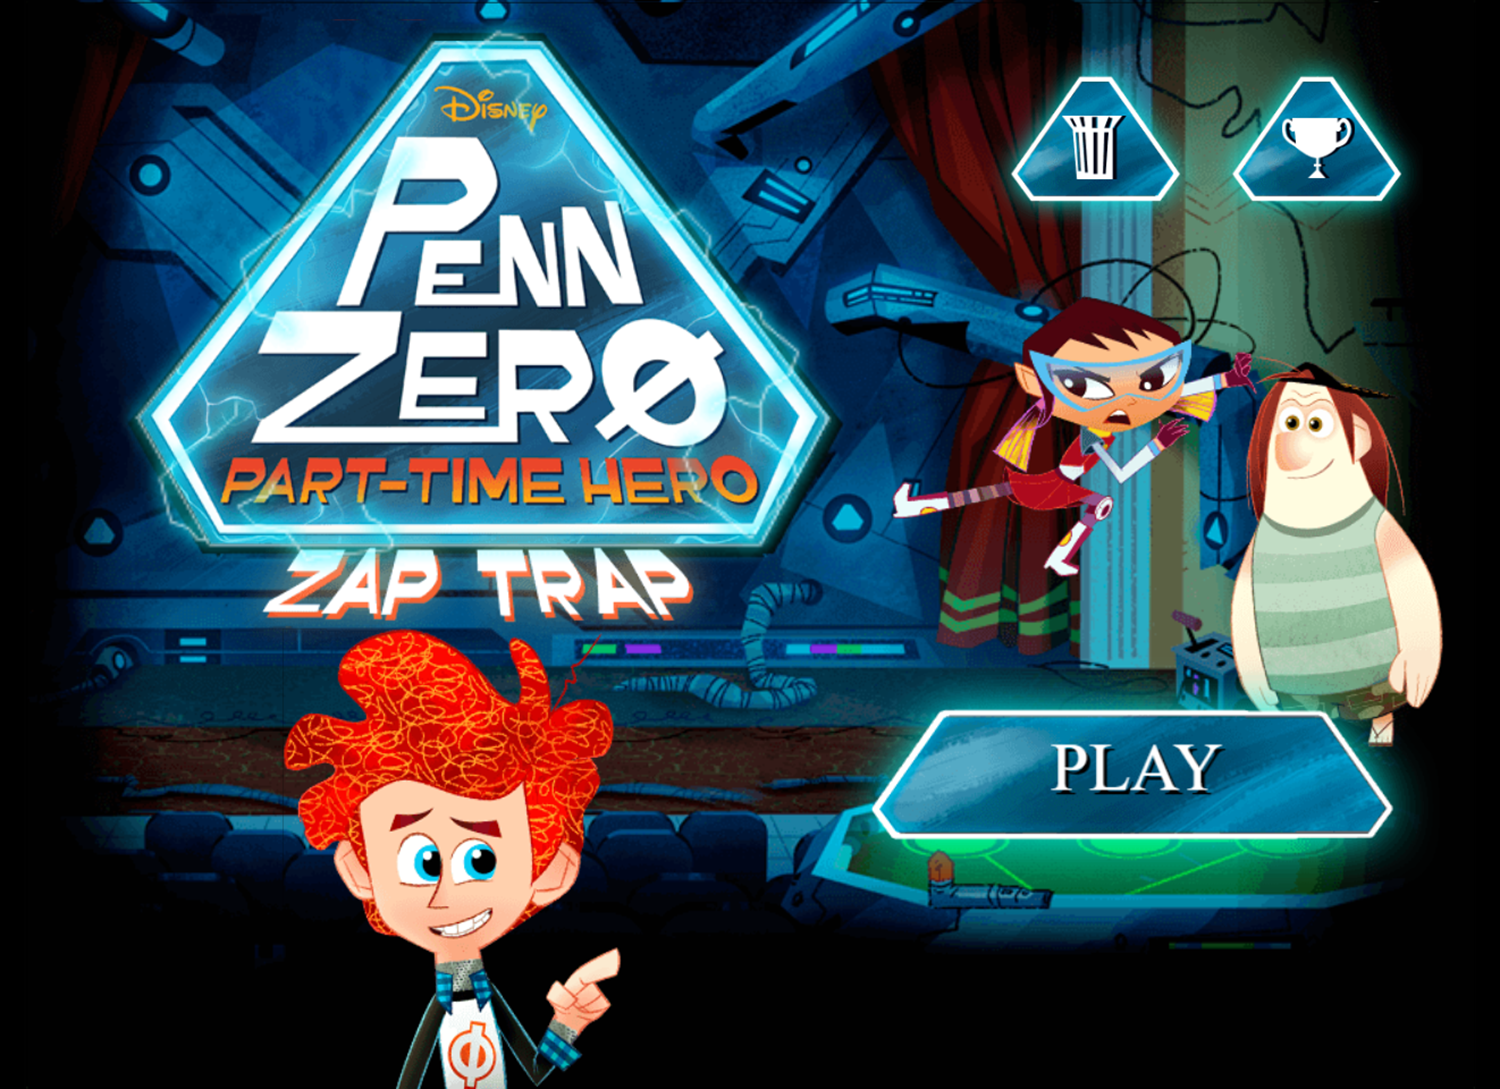 Penn Zero Part Time Hero Zap Trap Game Welcome Screen Screenshot.